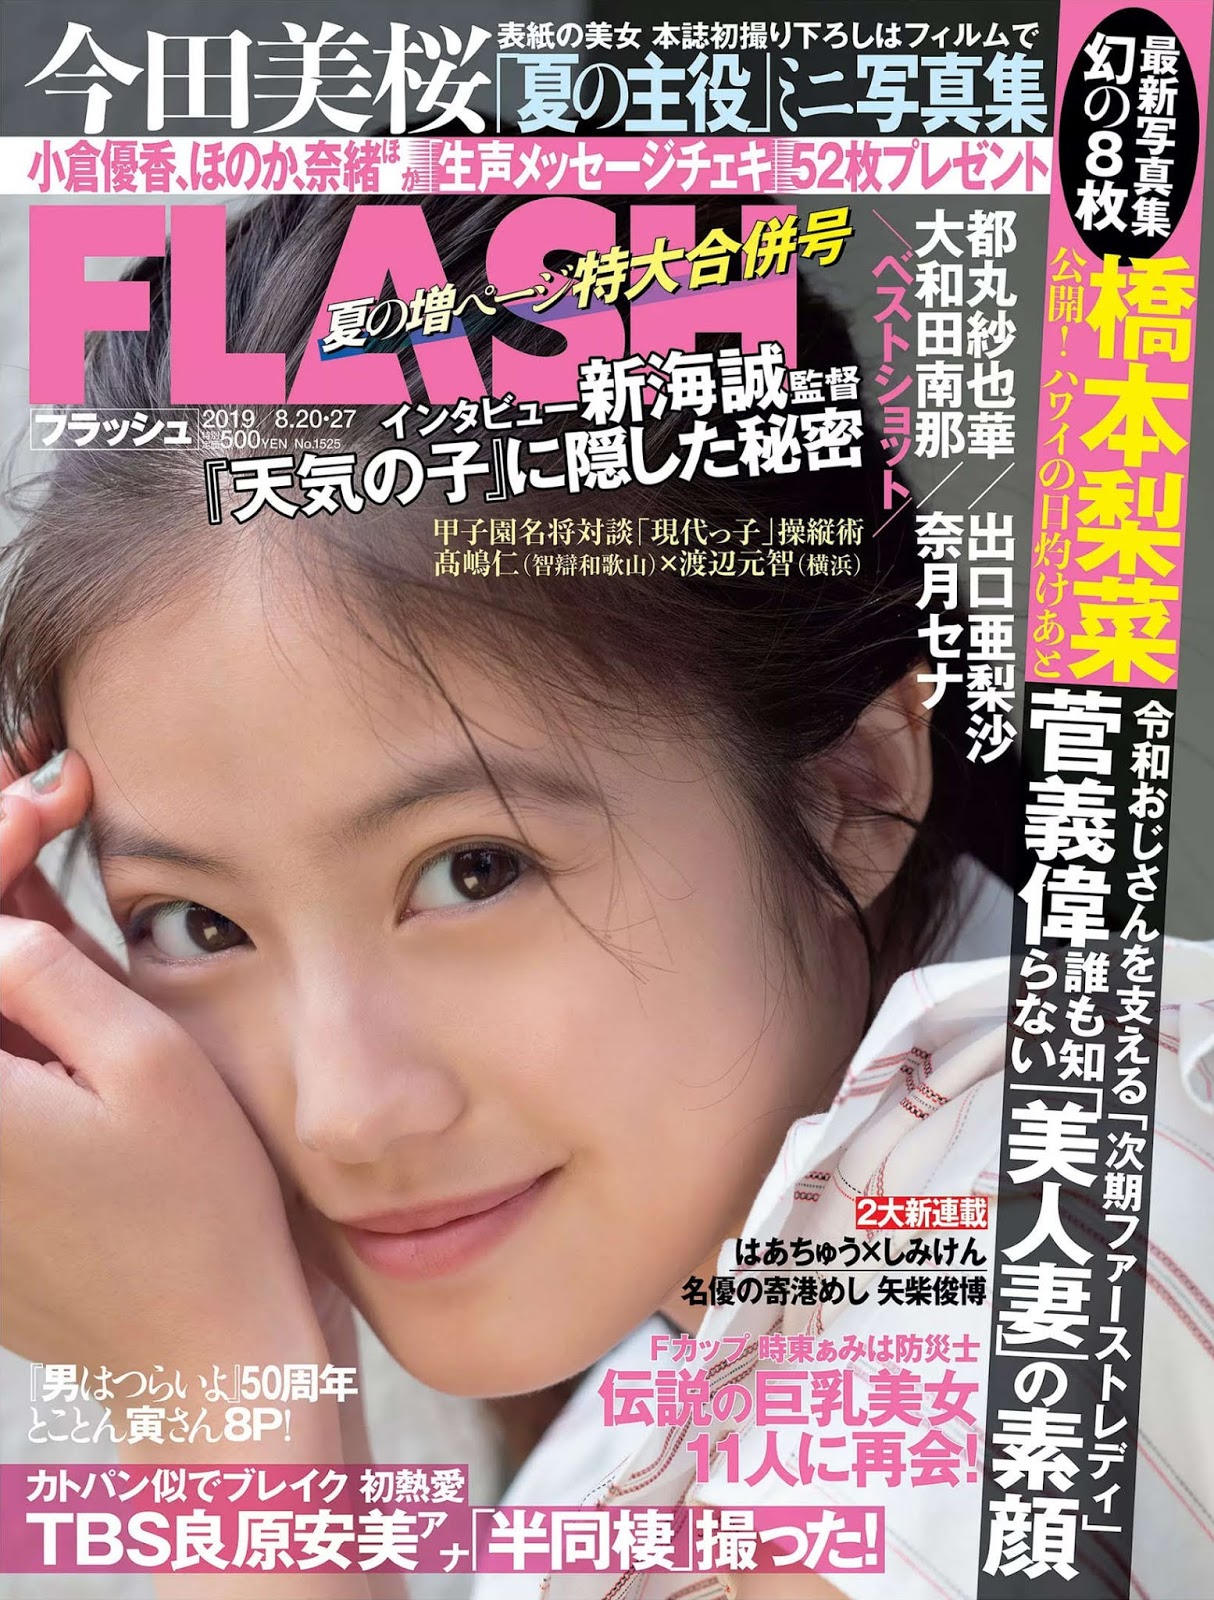 Mio Imada 今田美桜, FLASH 2019.08.20-27 (フラッシュ 2019年8月20-27日号)